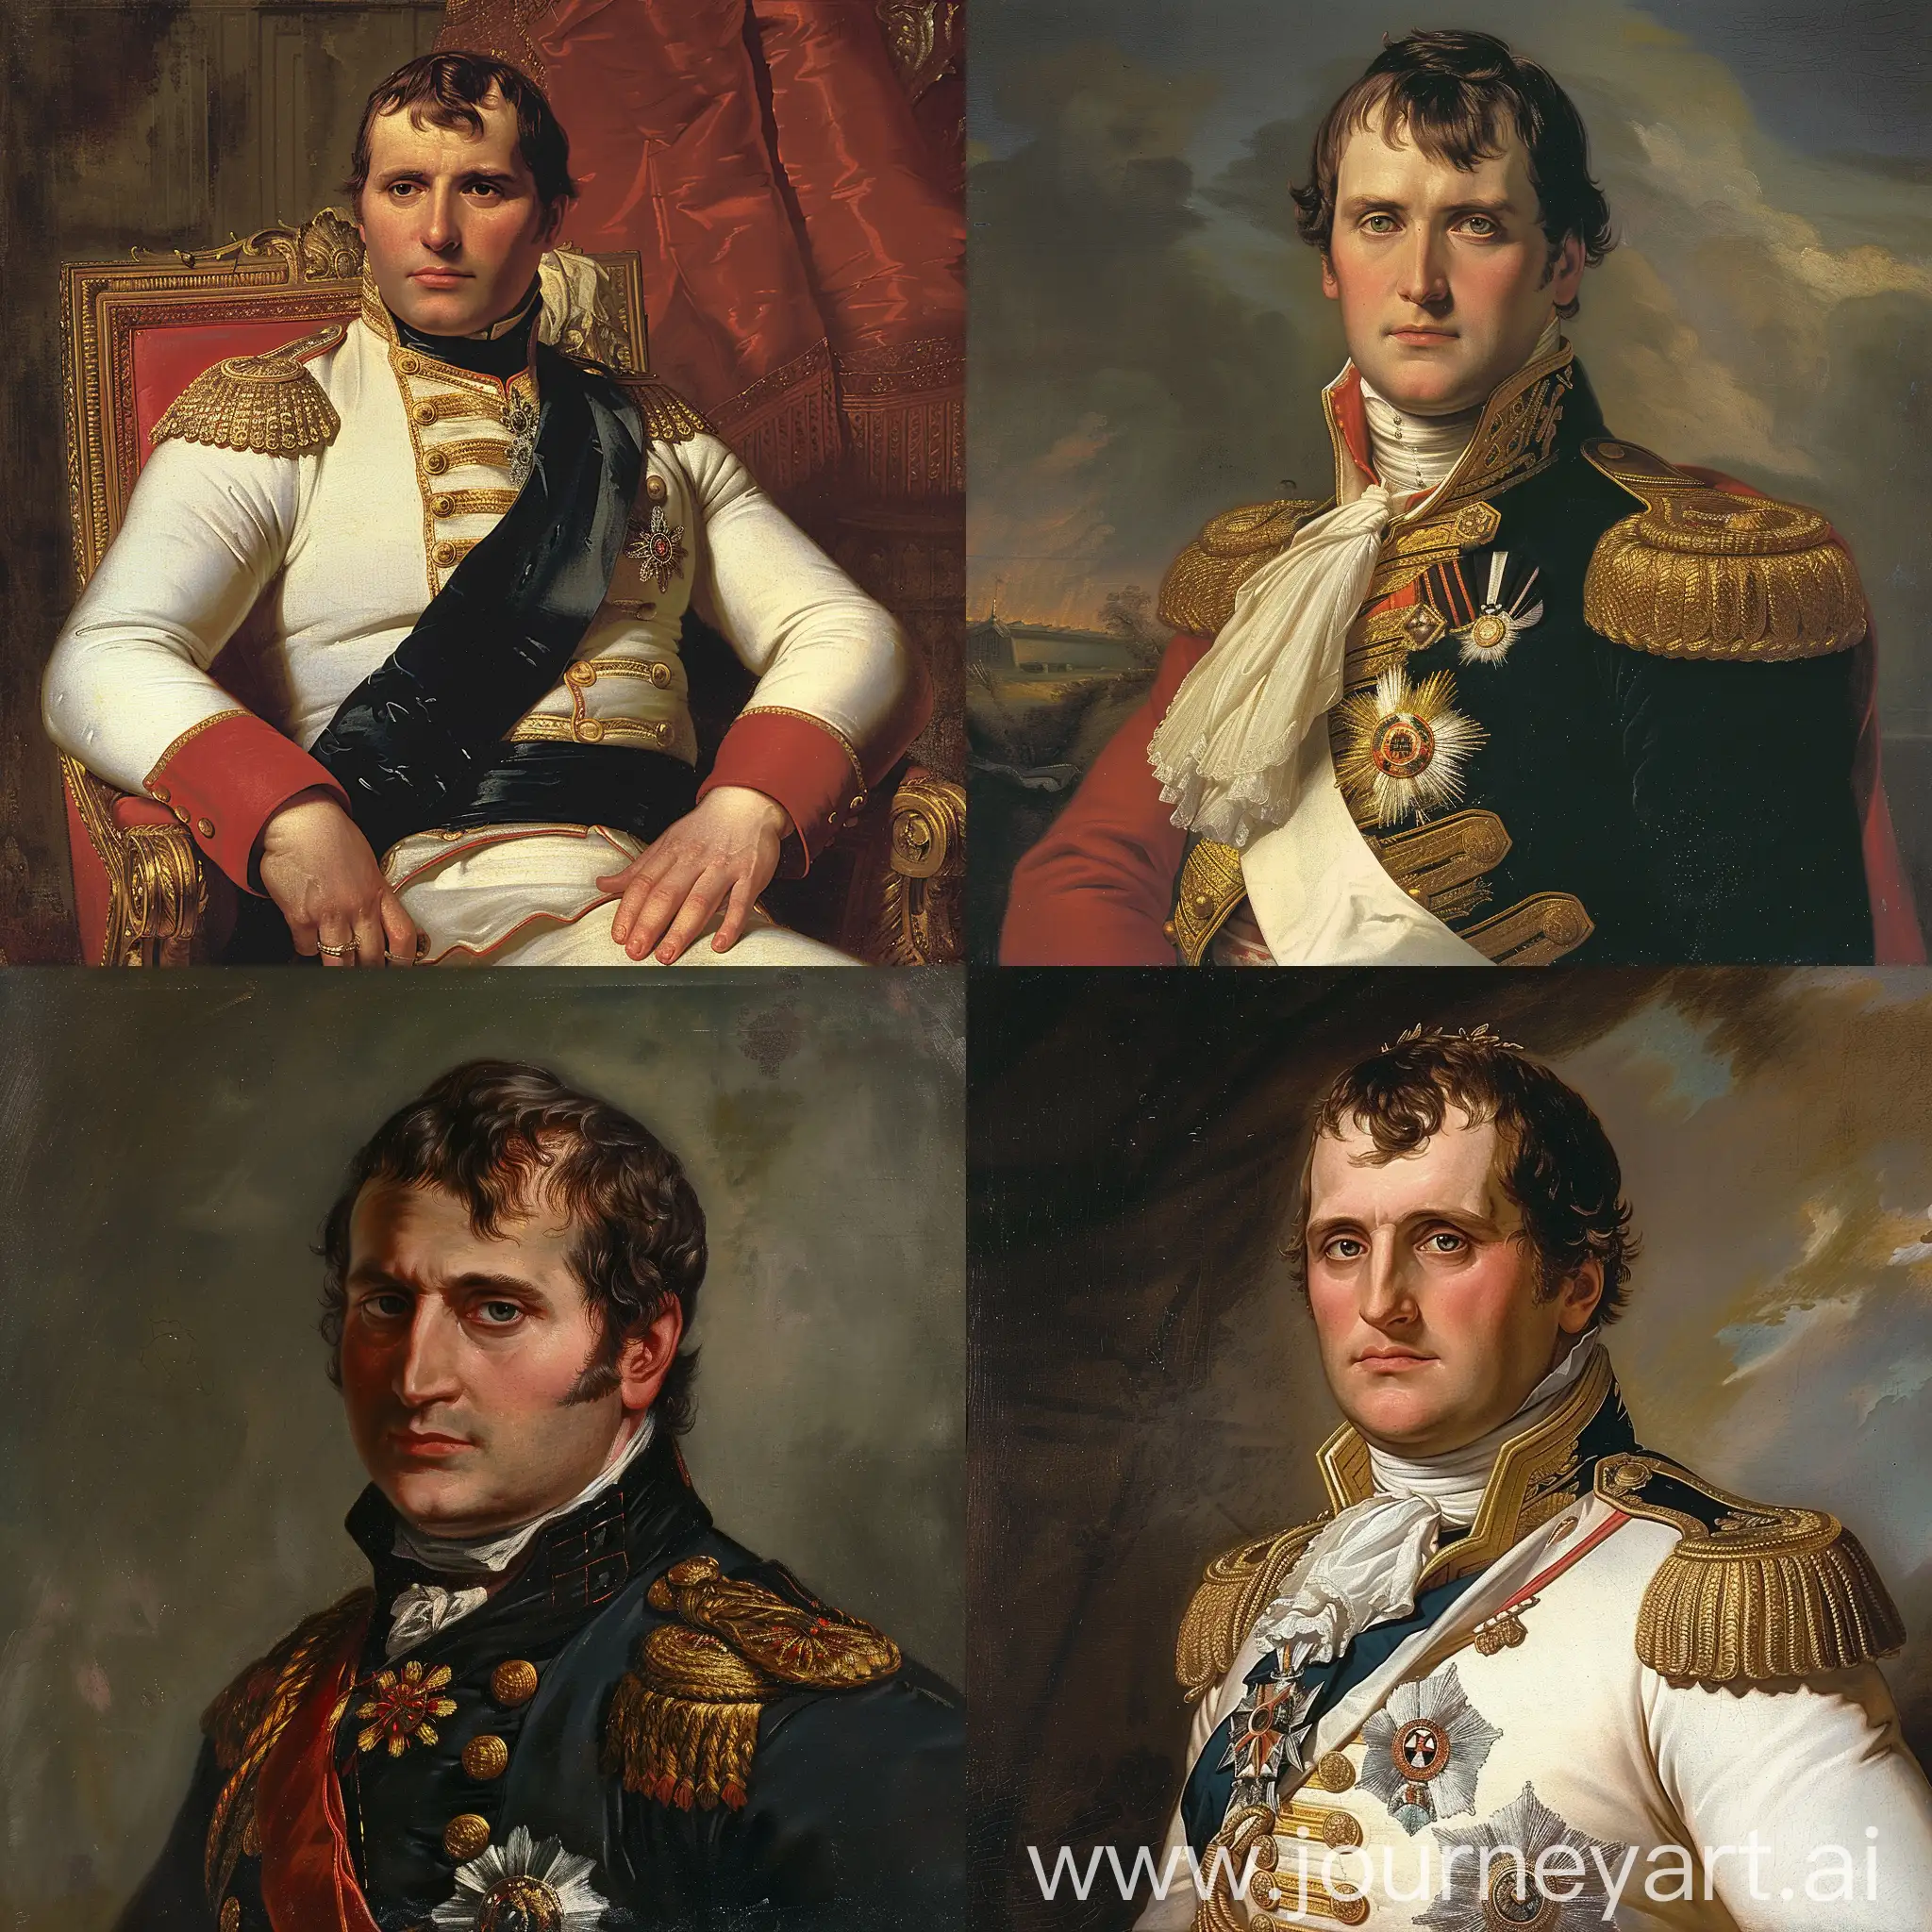 Napoleon-Bonaparte-Portrait-Majestic-Emperor-in-11-Aspect-Ratio